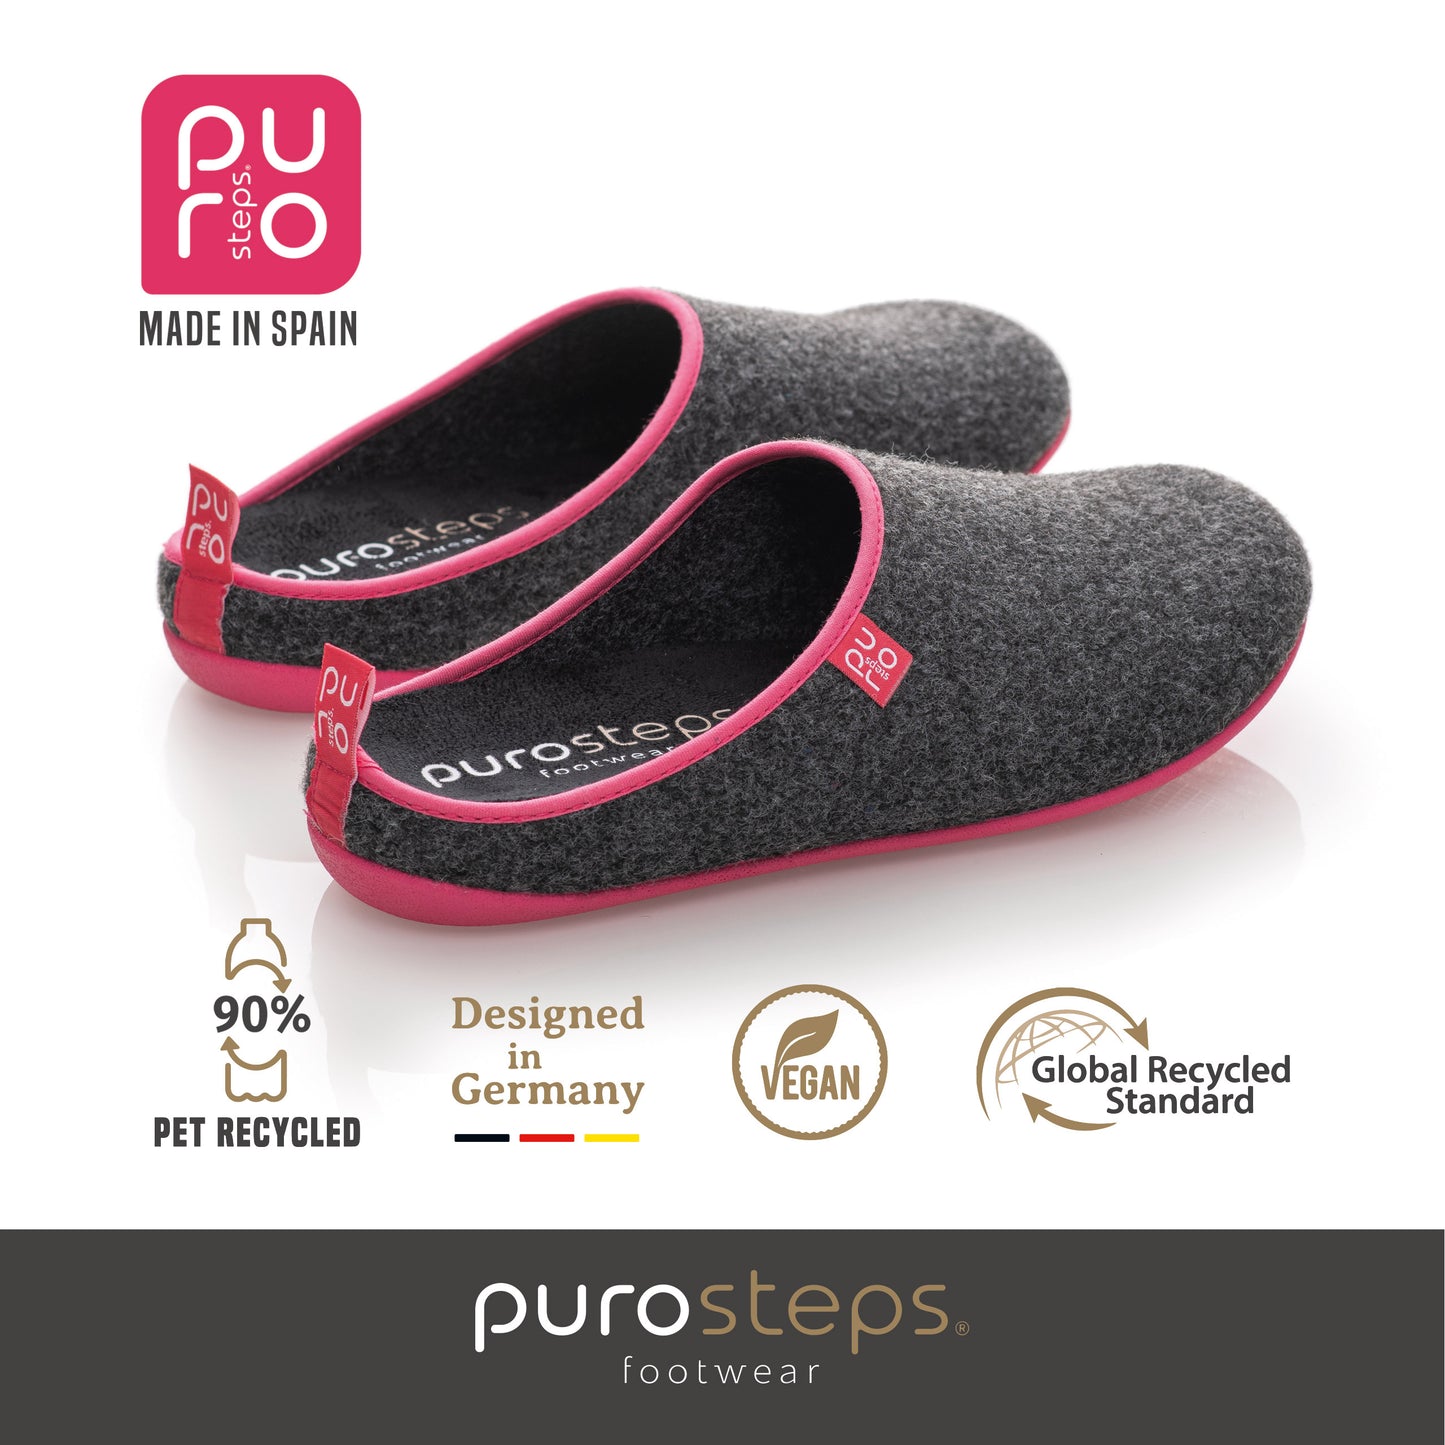 purosteps Fieltro-Eco Filz Hausschuhe Slipper Pantoffel Fußbett Unisex Recycelt Grau Pink